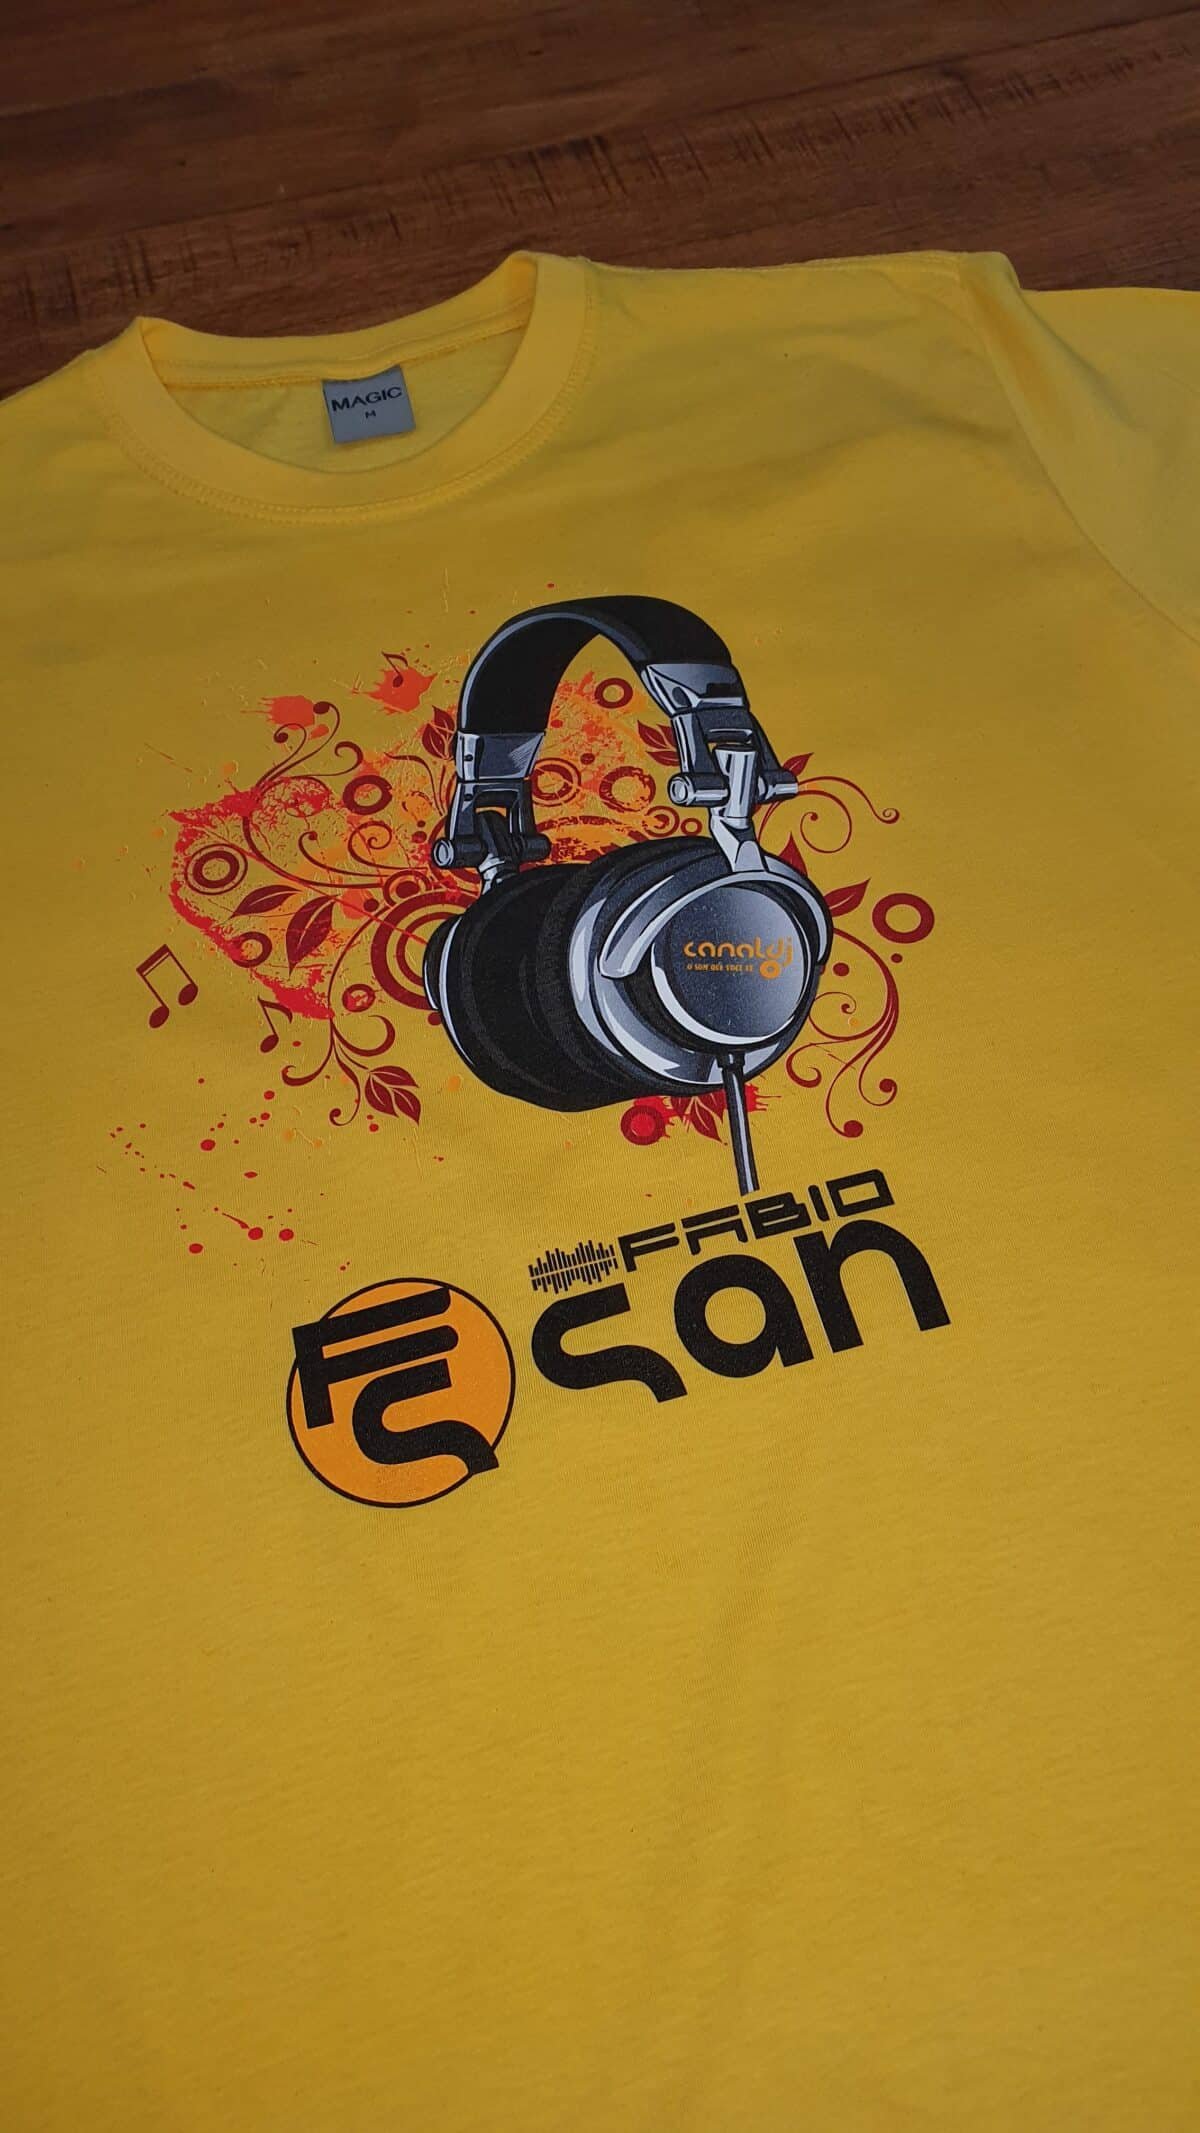 Camiseta DJ Fabio San - Aniversário - by Bordado & Cia - @bordado.cia @djfabiosan